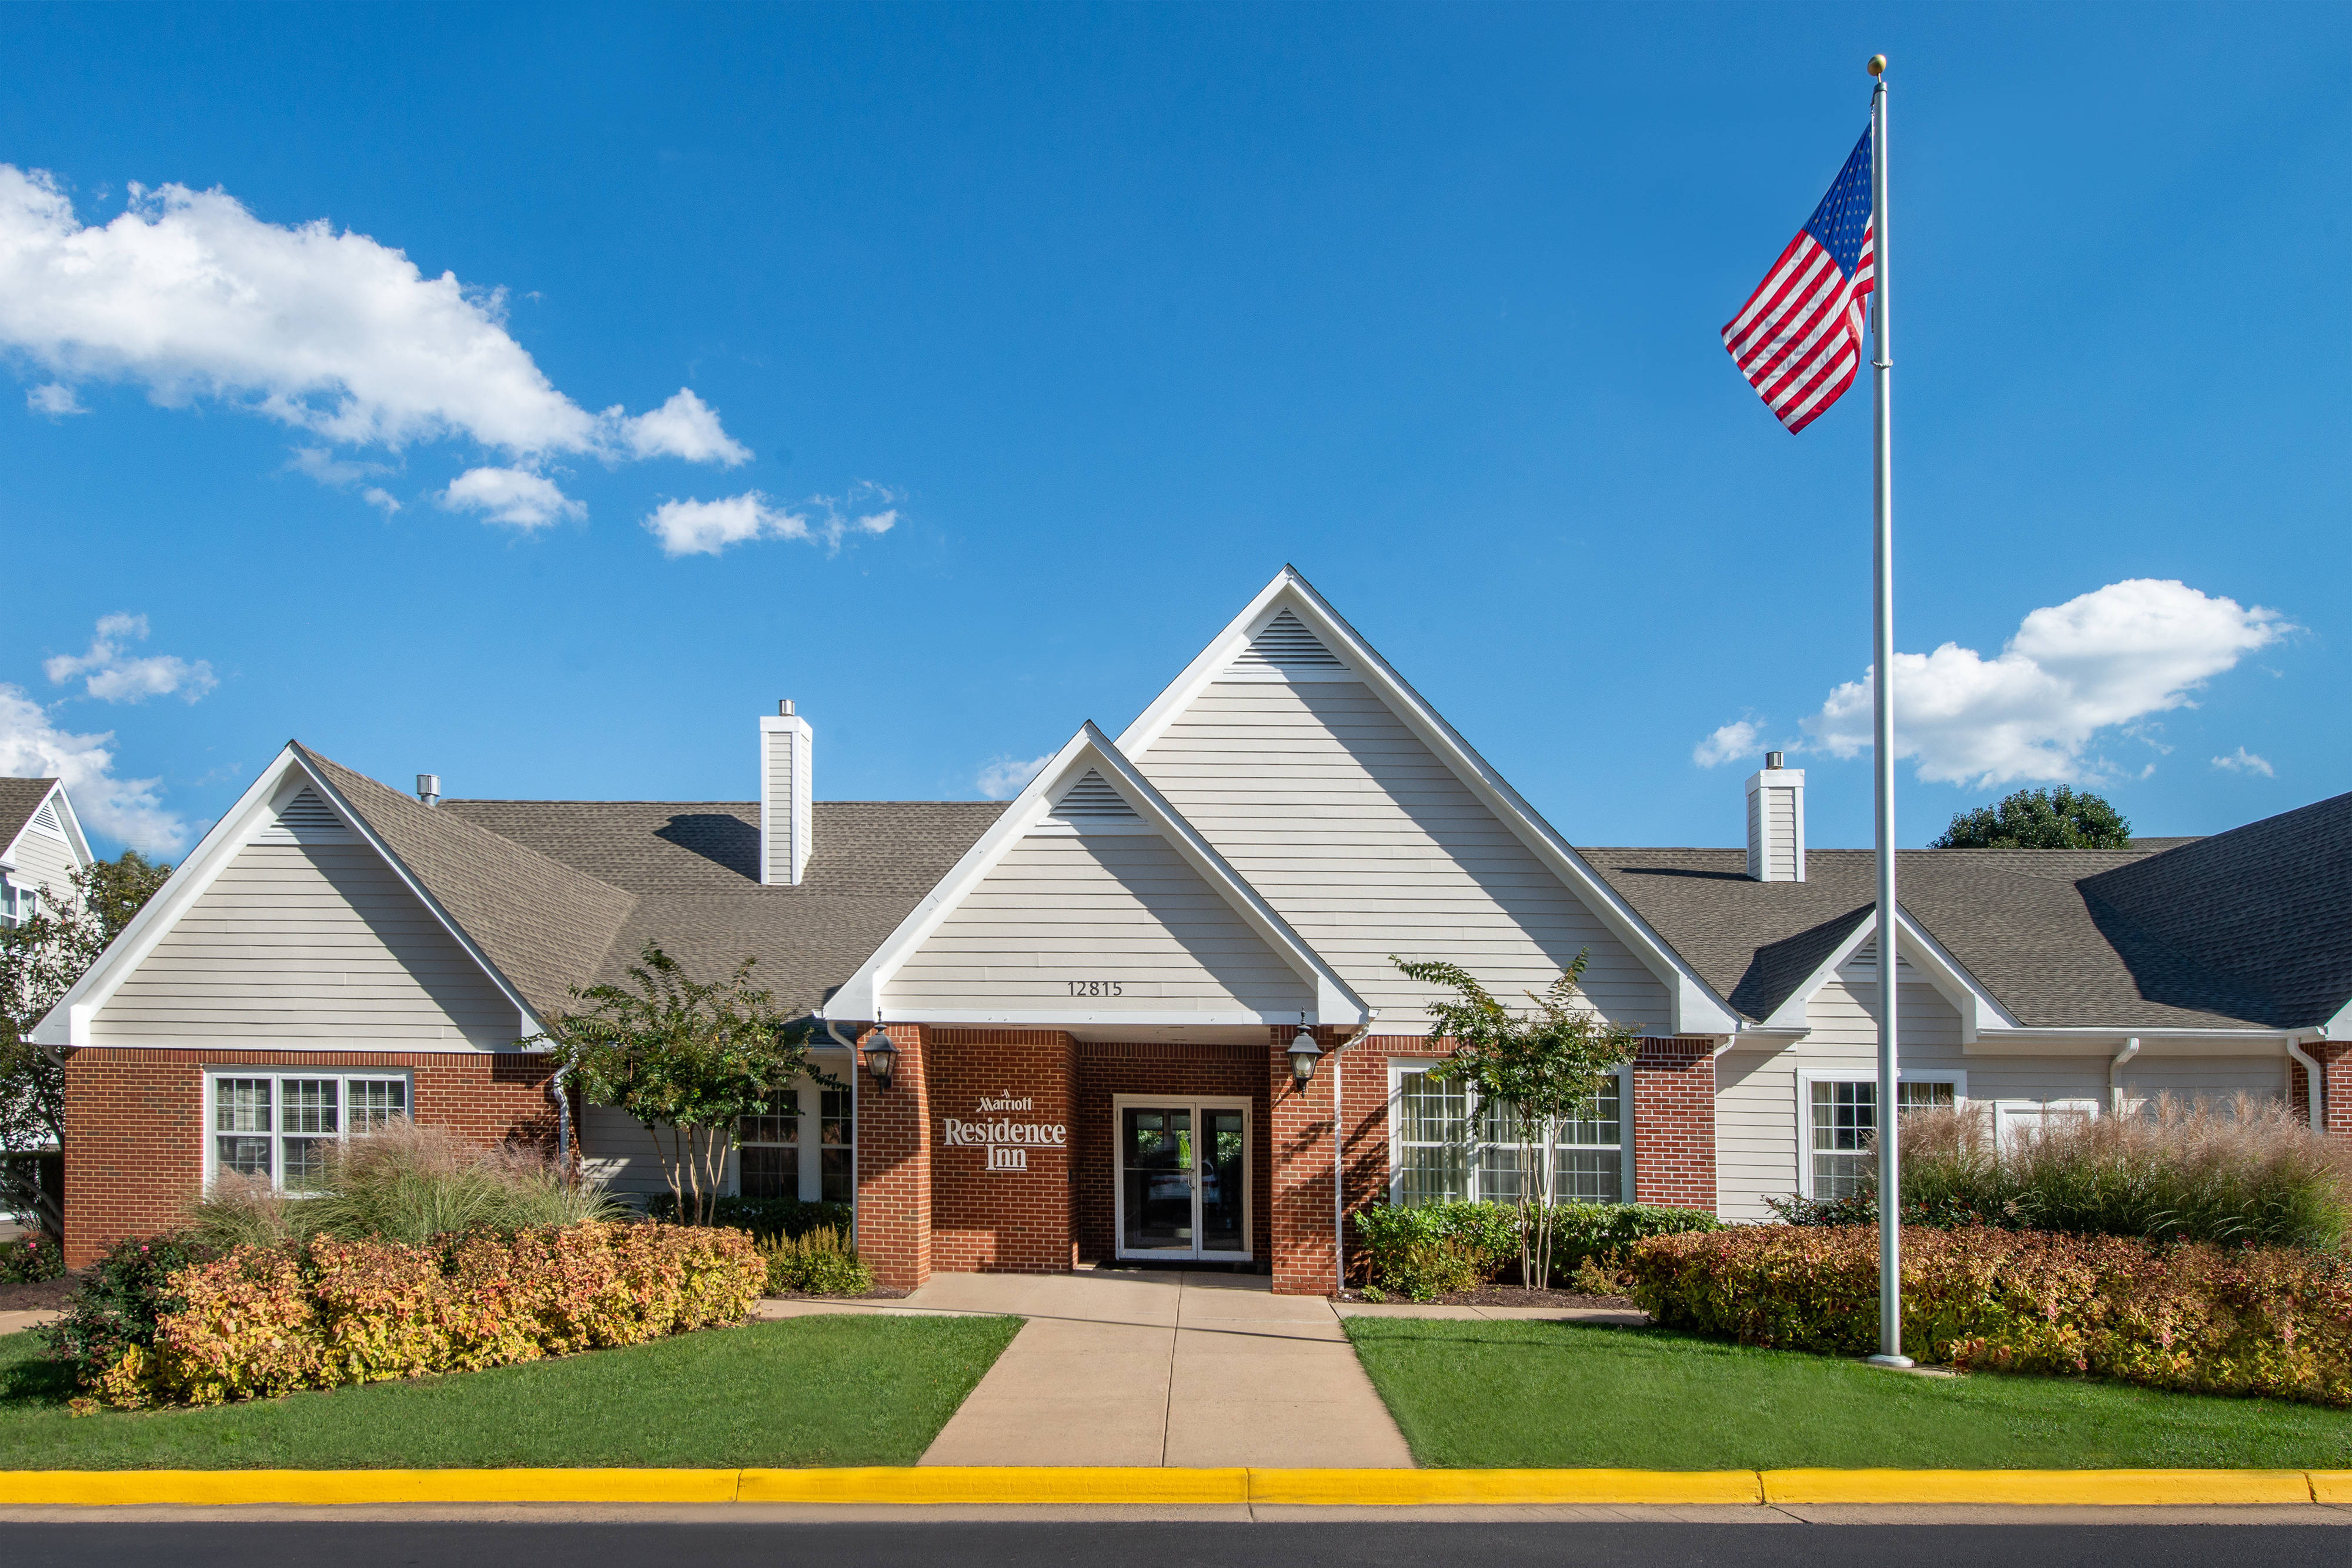 Photo of Residence Inn by Marriott Fair Lakes Fairfax, Fairfax, VA